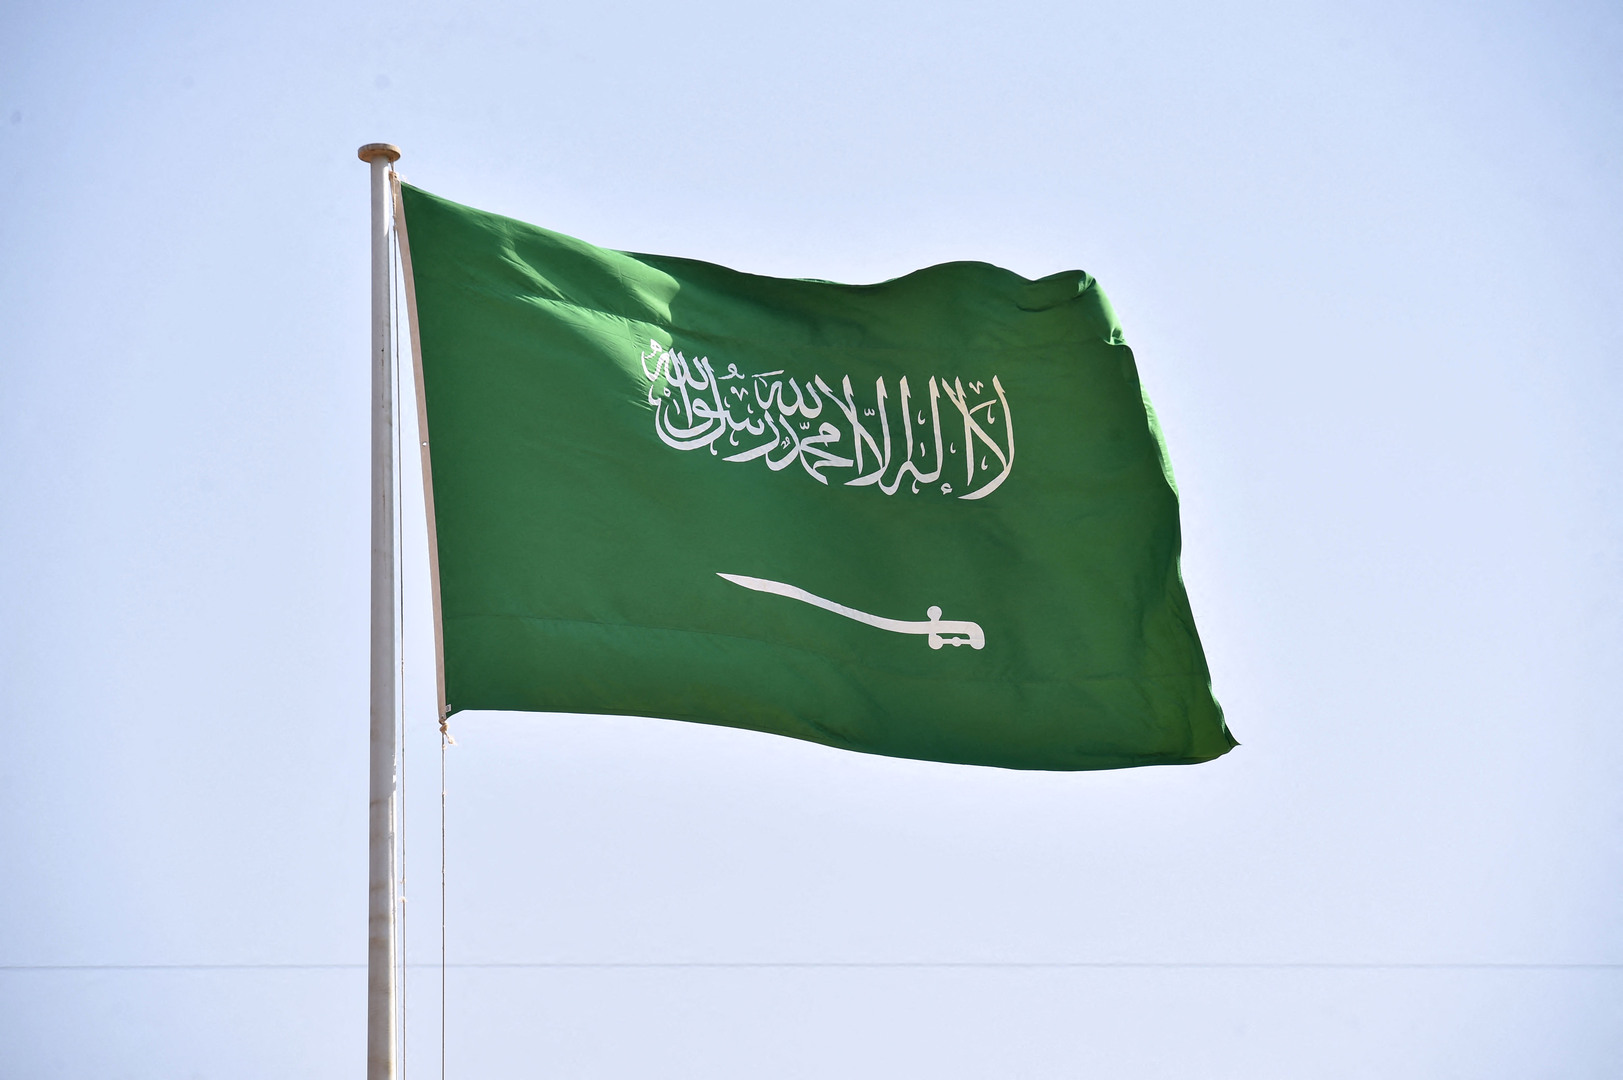 السعودية.. السجن 31 عاما وغرامة 152 مليون ريال لـ6 متهمين بغسل أموال